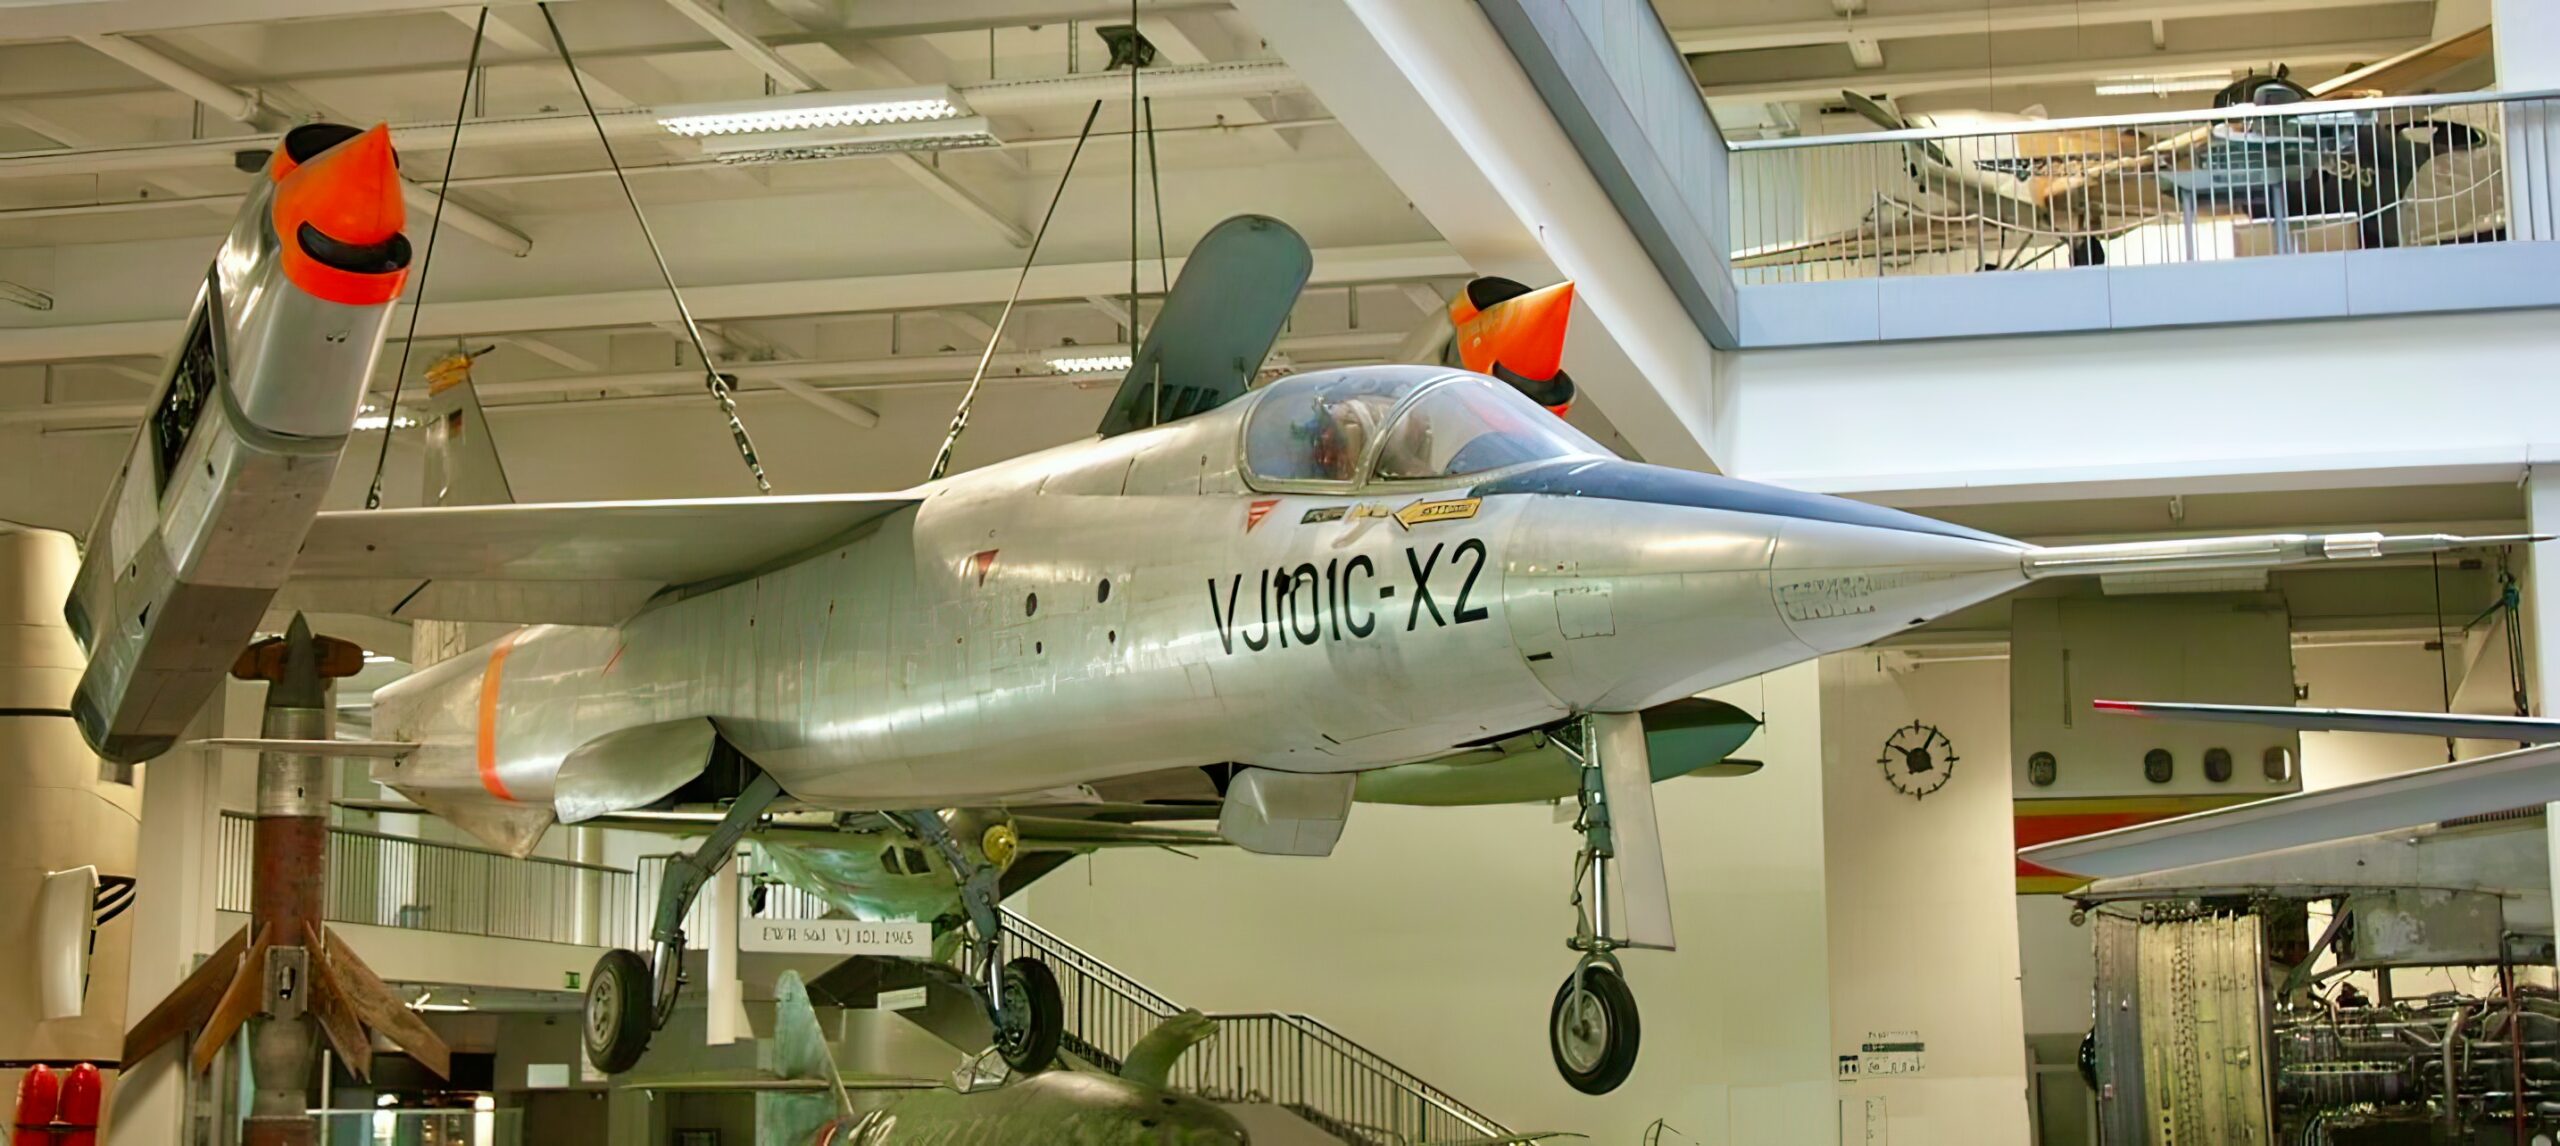 X-2 prototype